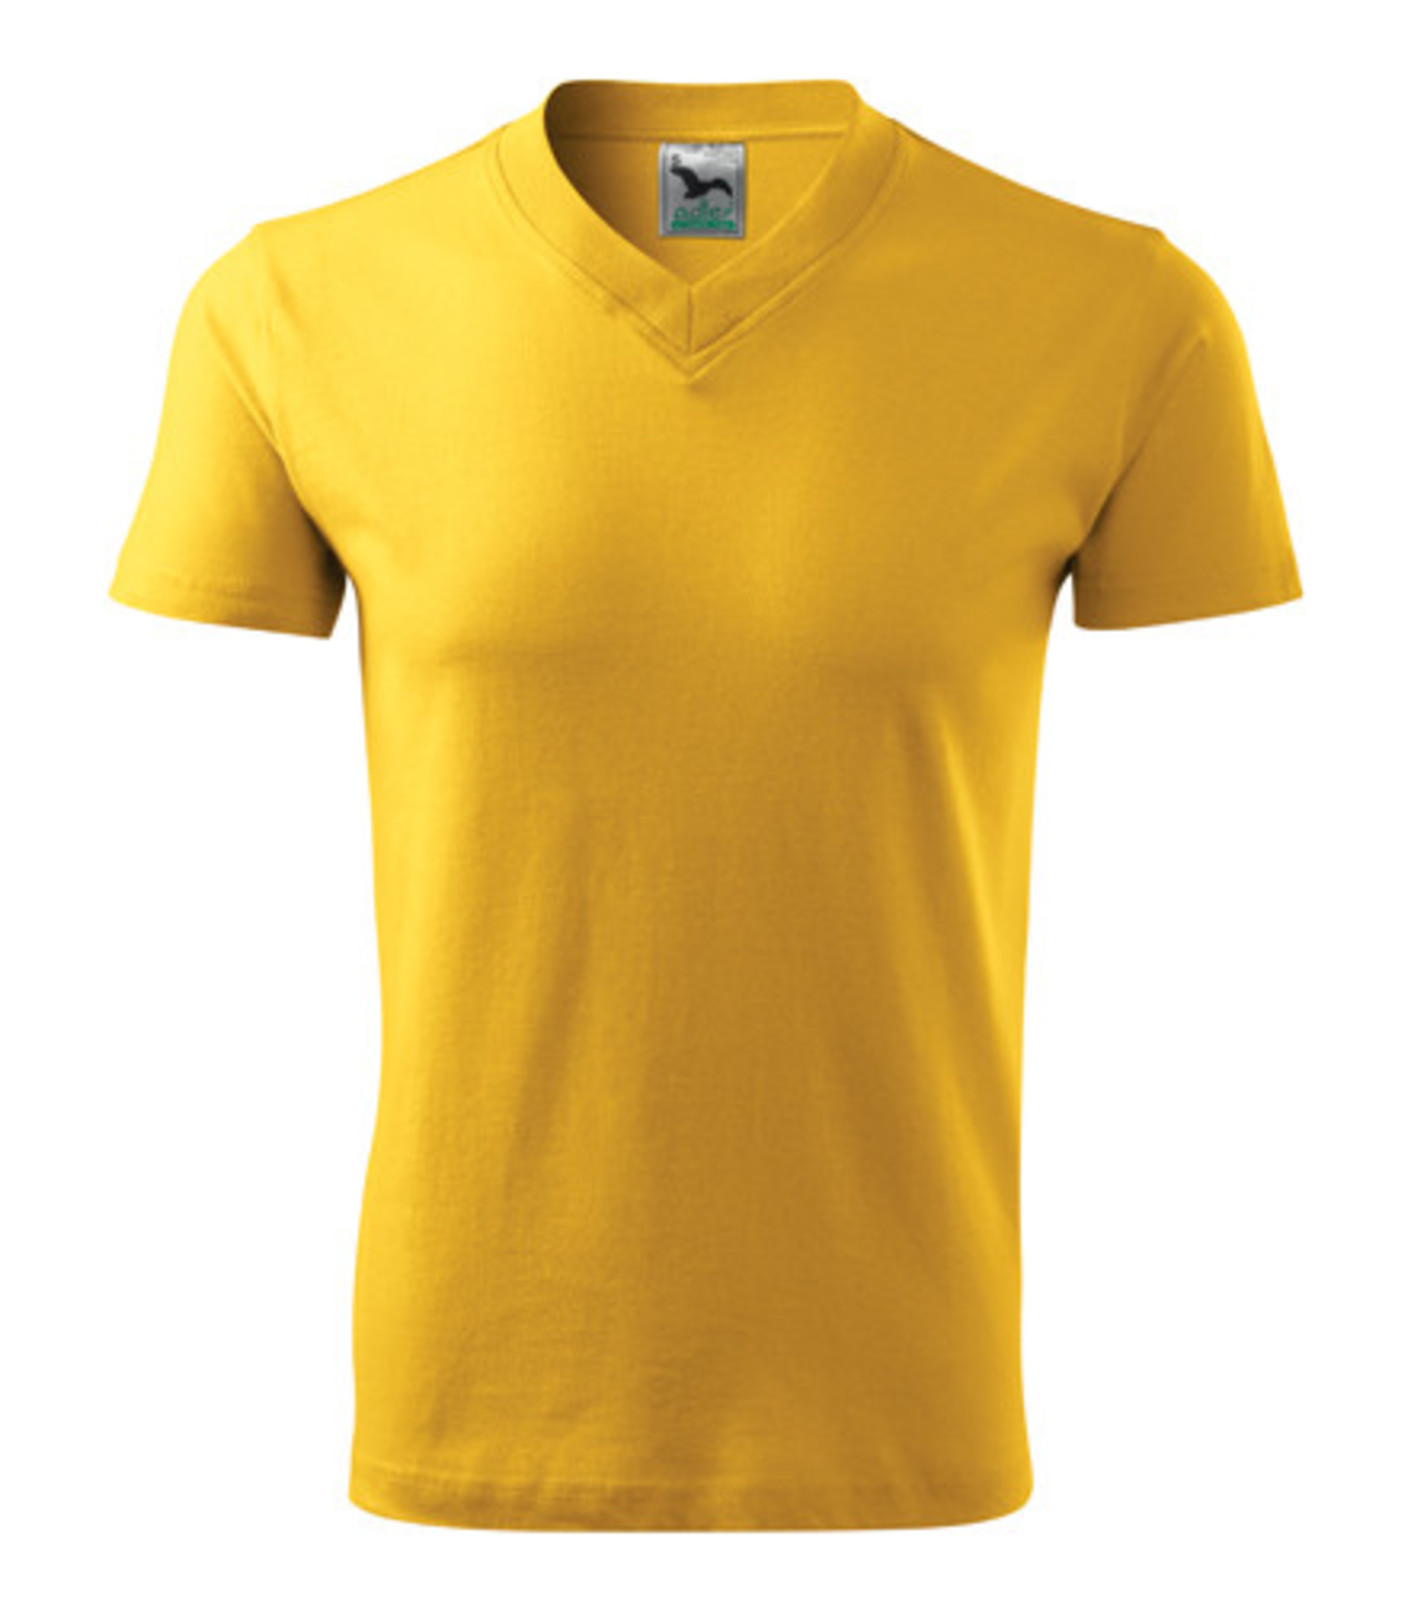 Unisex tričko s výstrihom Adler V-Neck 102 - veľkosť: M, farba: žltá